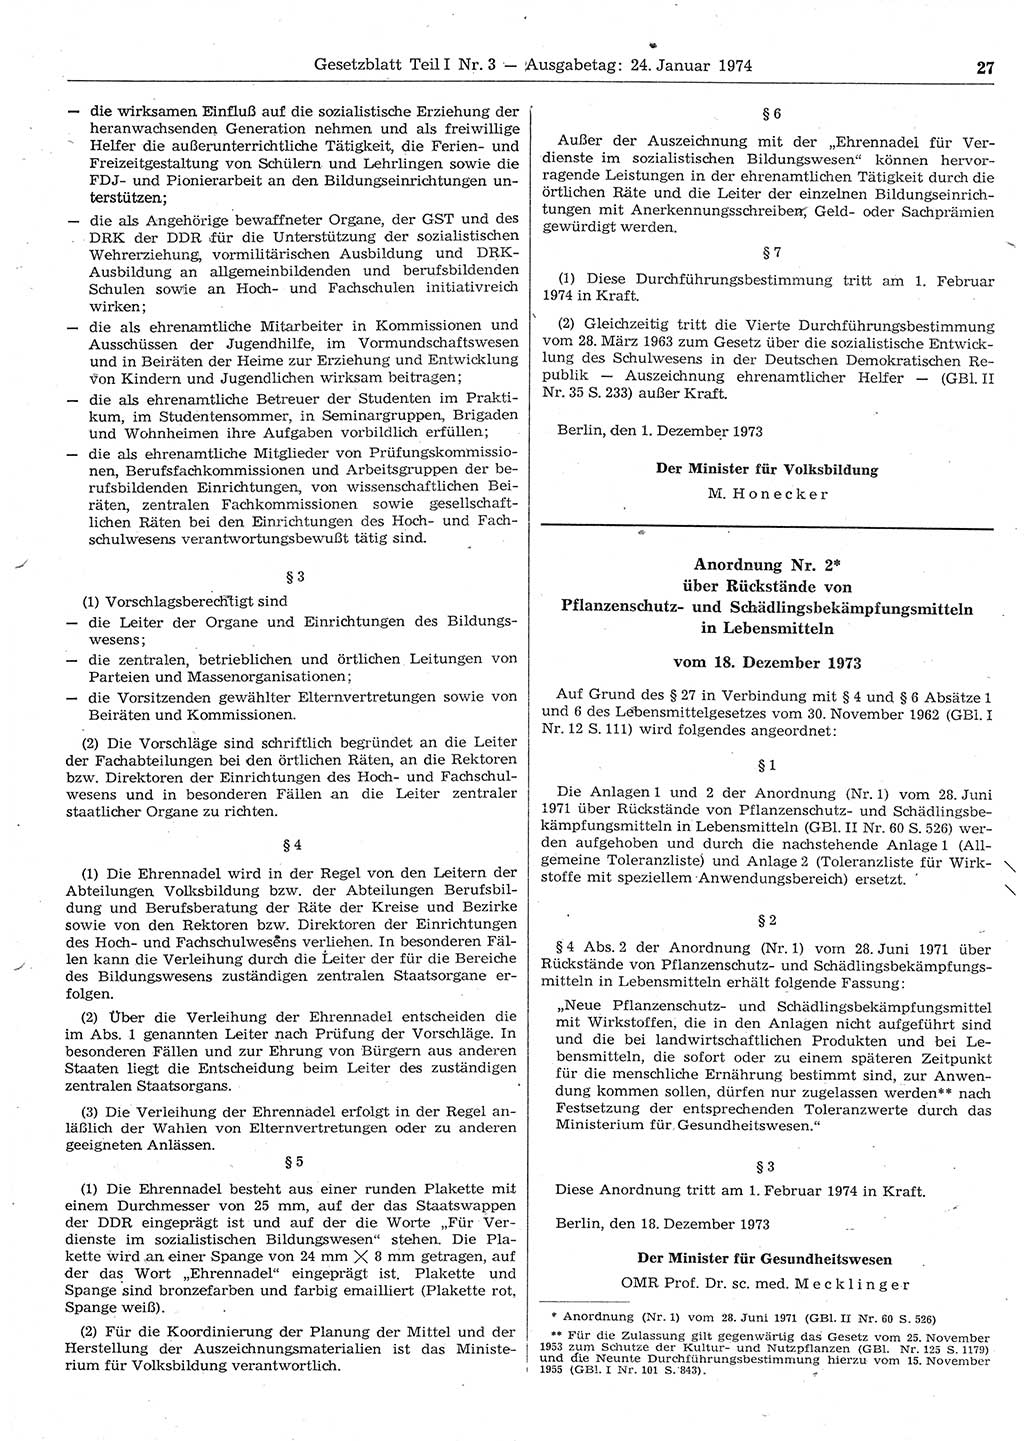 Gesetzblatt (GBl.) der Deutschen Demokratischen Republik (DDR) Teil Ⅰ 1974, Seite 27 (GBl. DDR Ⅰ 1974, S. 27)